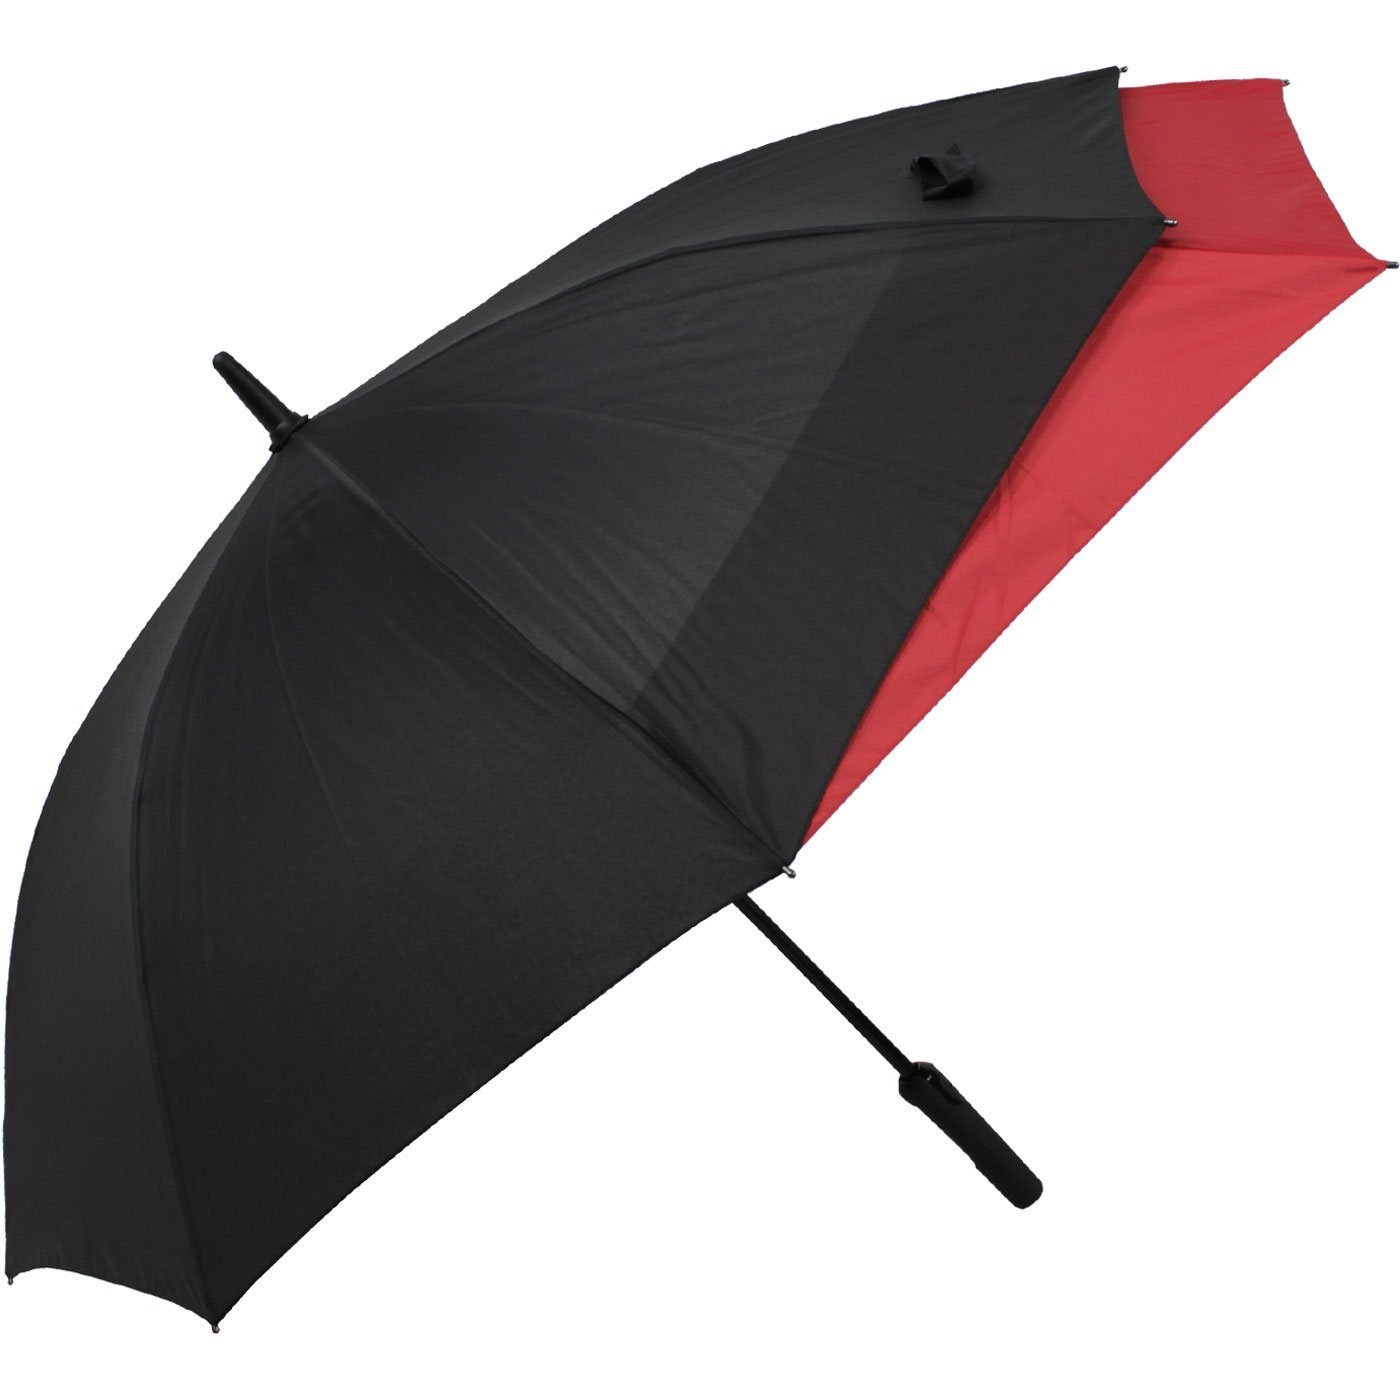 XL, beim mit für Langregenschirm Öffnen Regen Auf-Automatik Schutz Fiberglas sich - schwarz-rot vor vergrößert to mehr doppler® Move